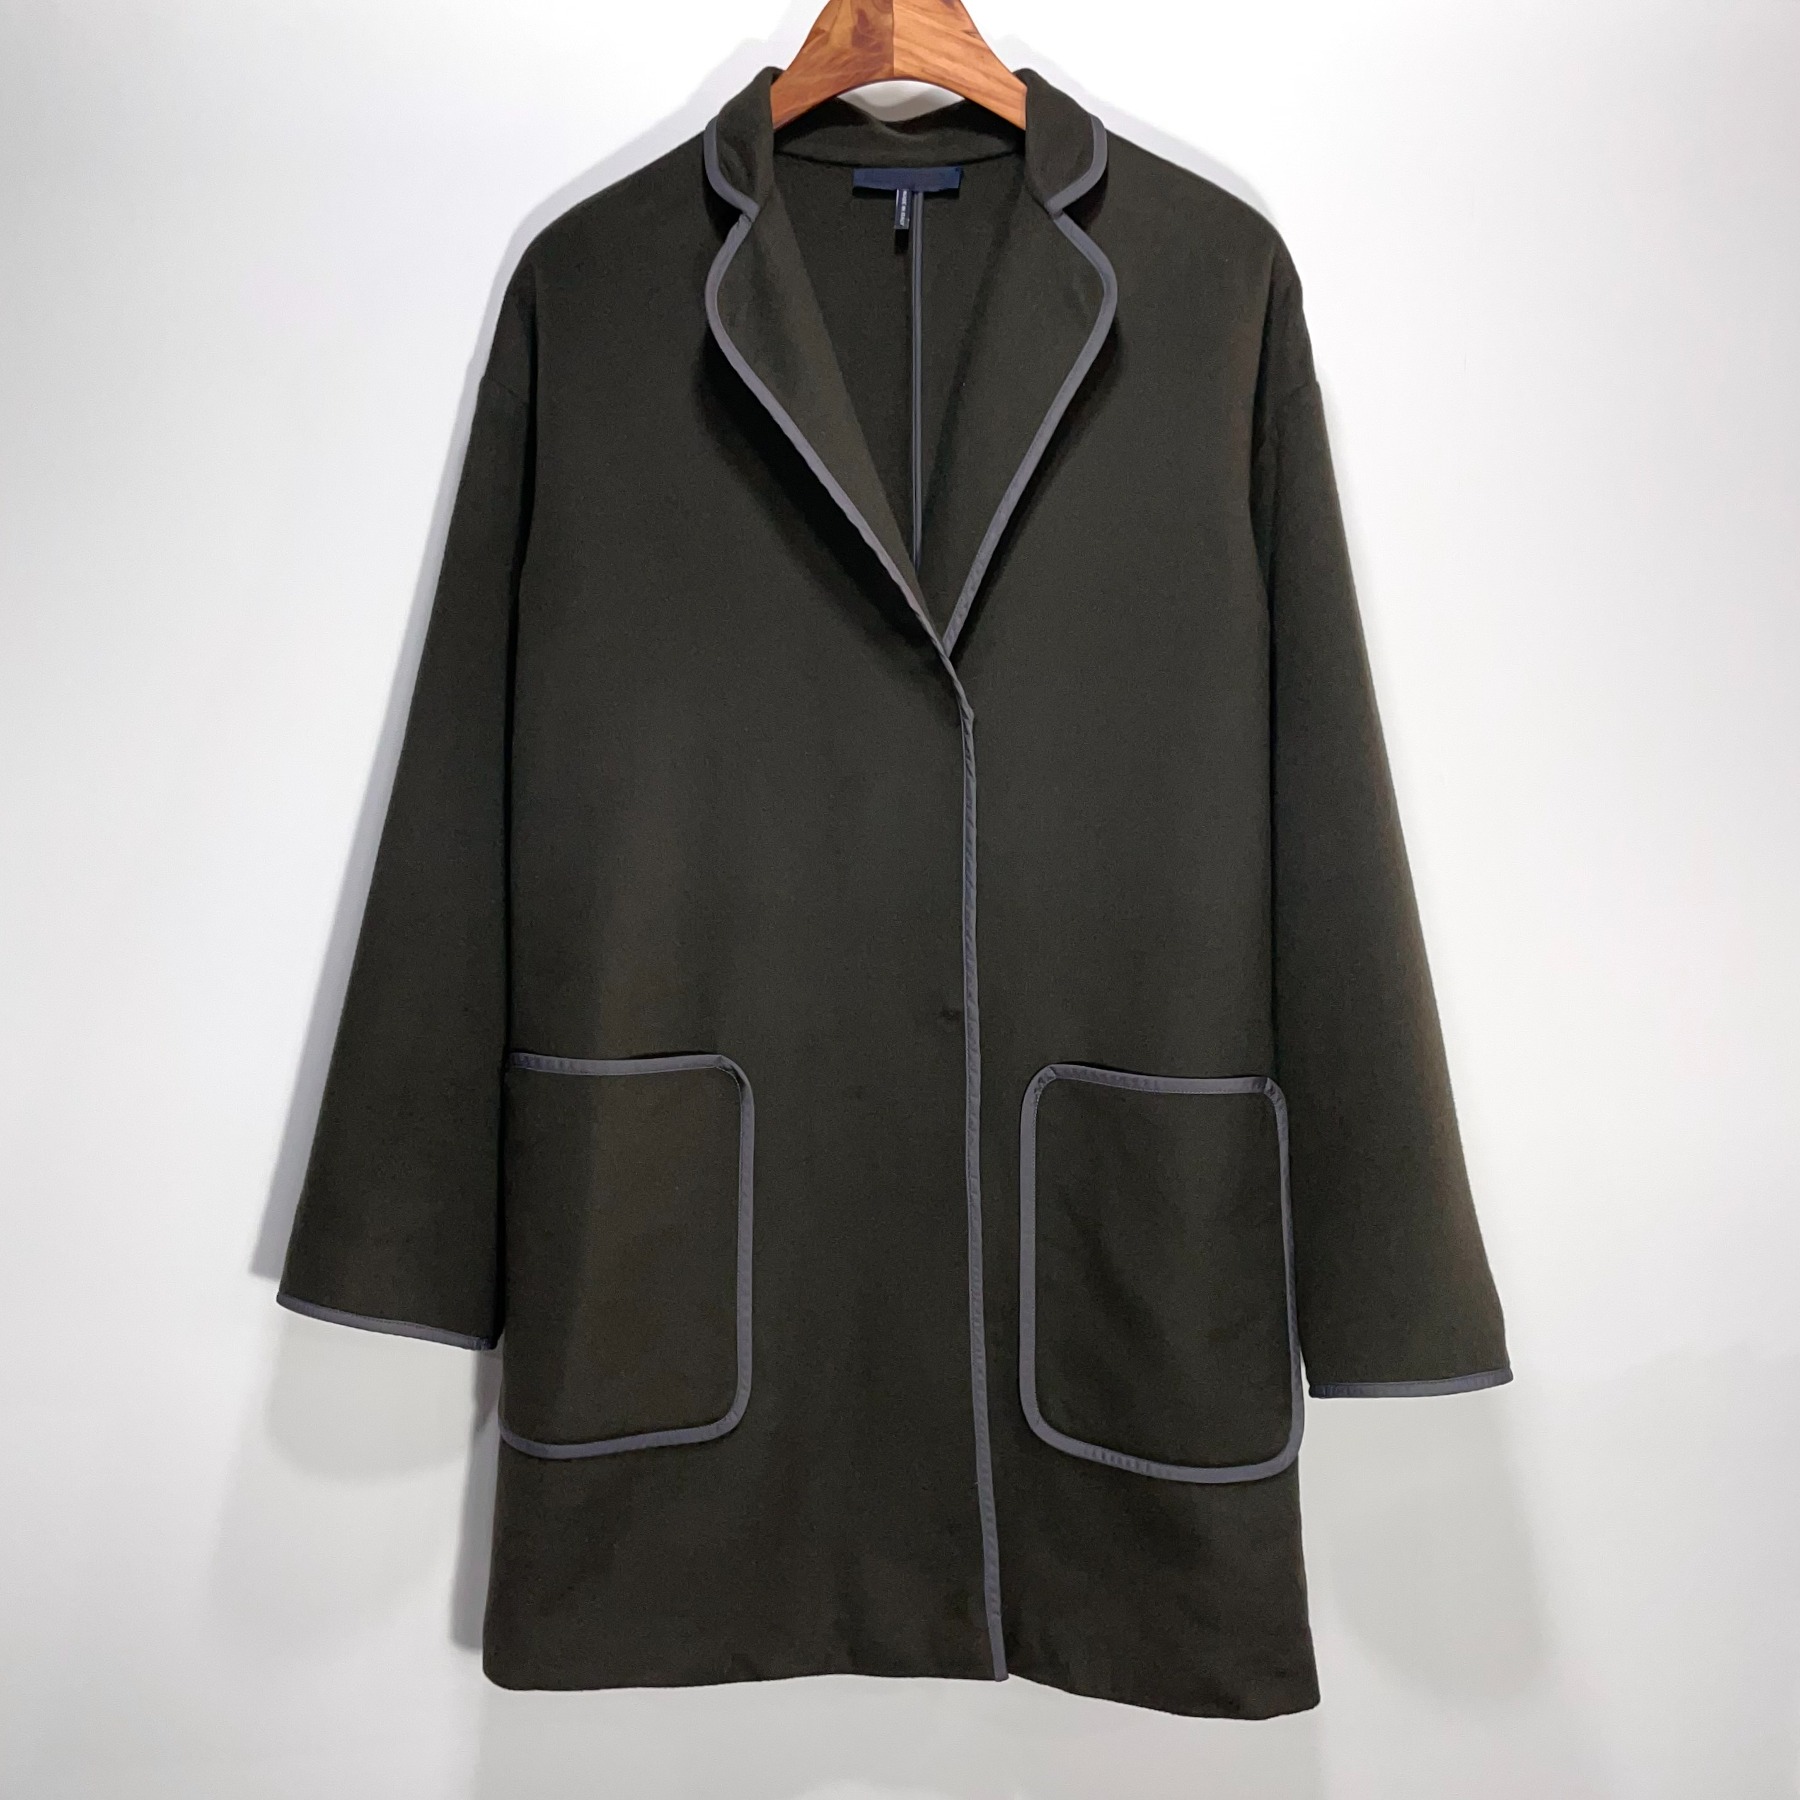 2011 Jil Sander Half Coat (Made in ITALY) - 32